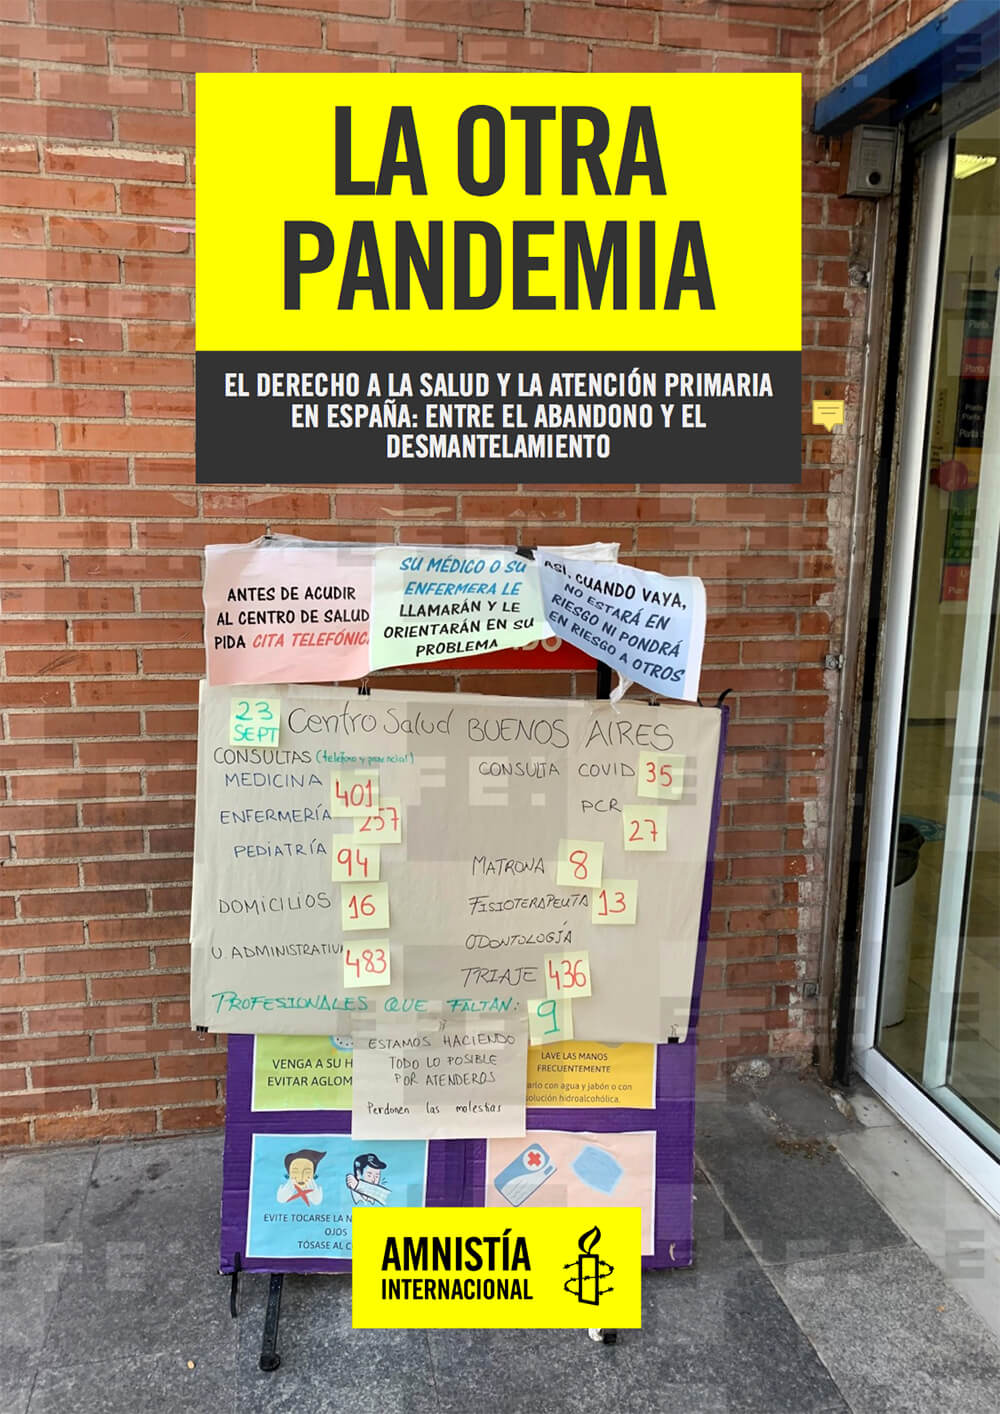 La otra pandemia: entre el abandono y el desmantelamiento:el derecho a la salud y la atención primaria en España